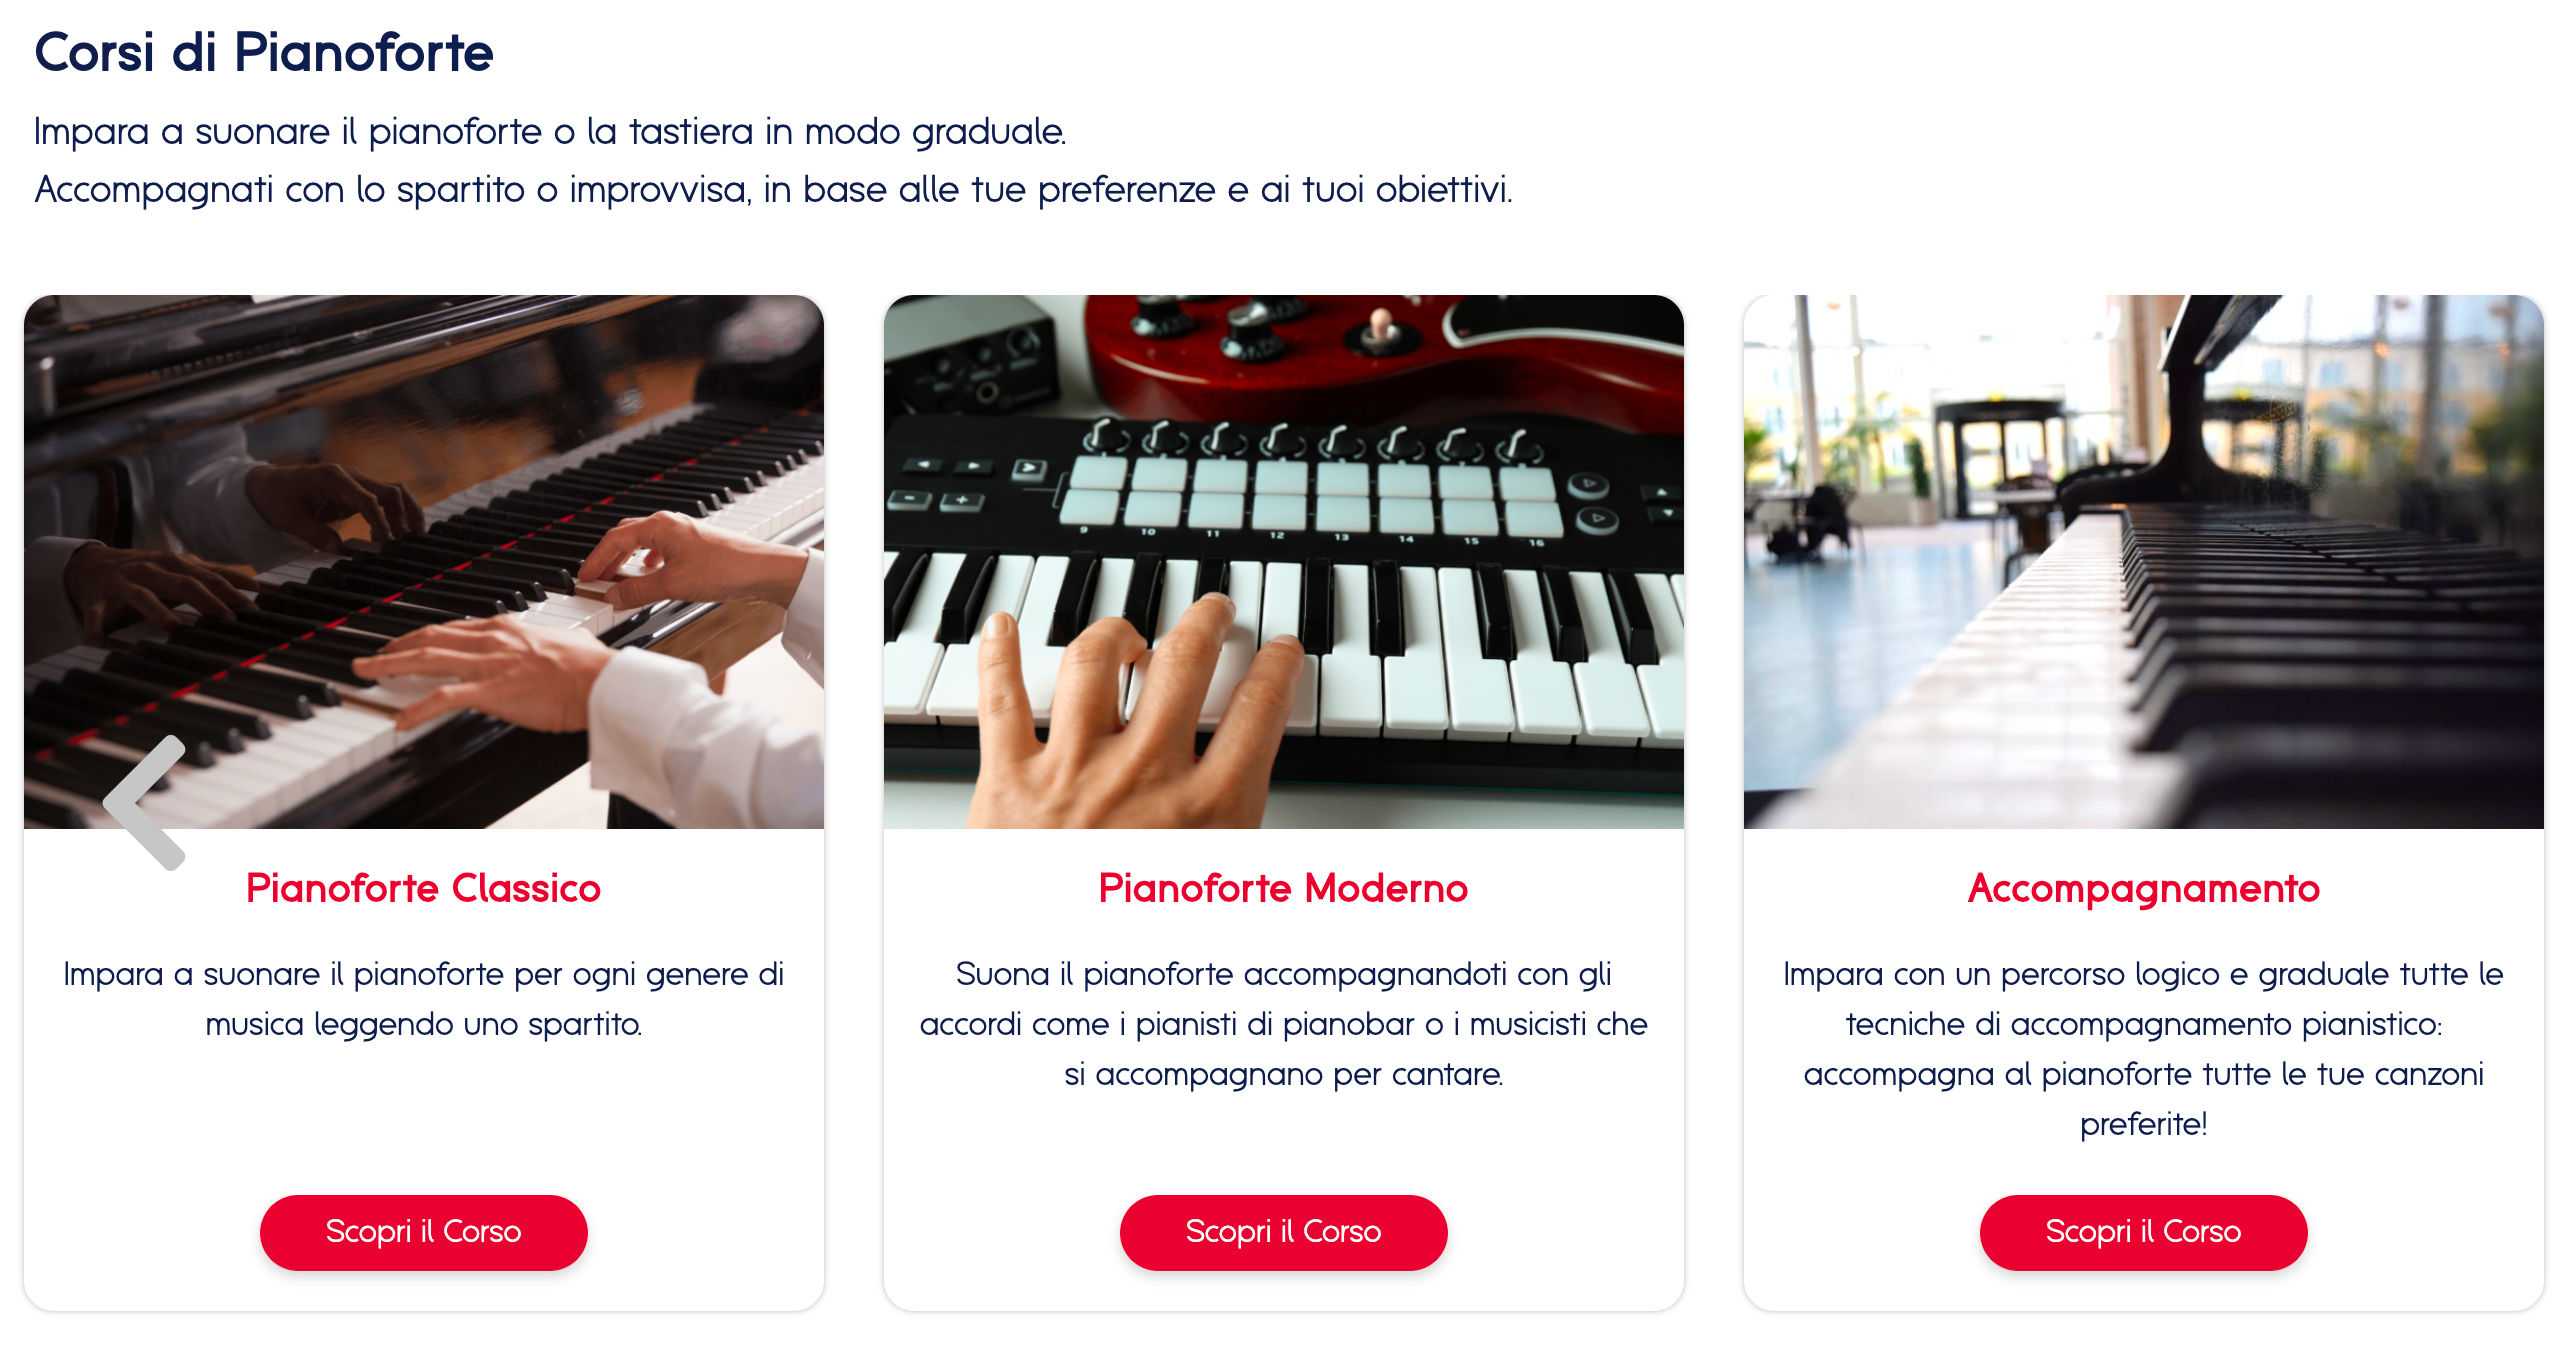 Alcuni dei corsi disponibili sul sito Dentro la musica